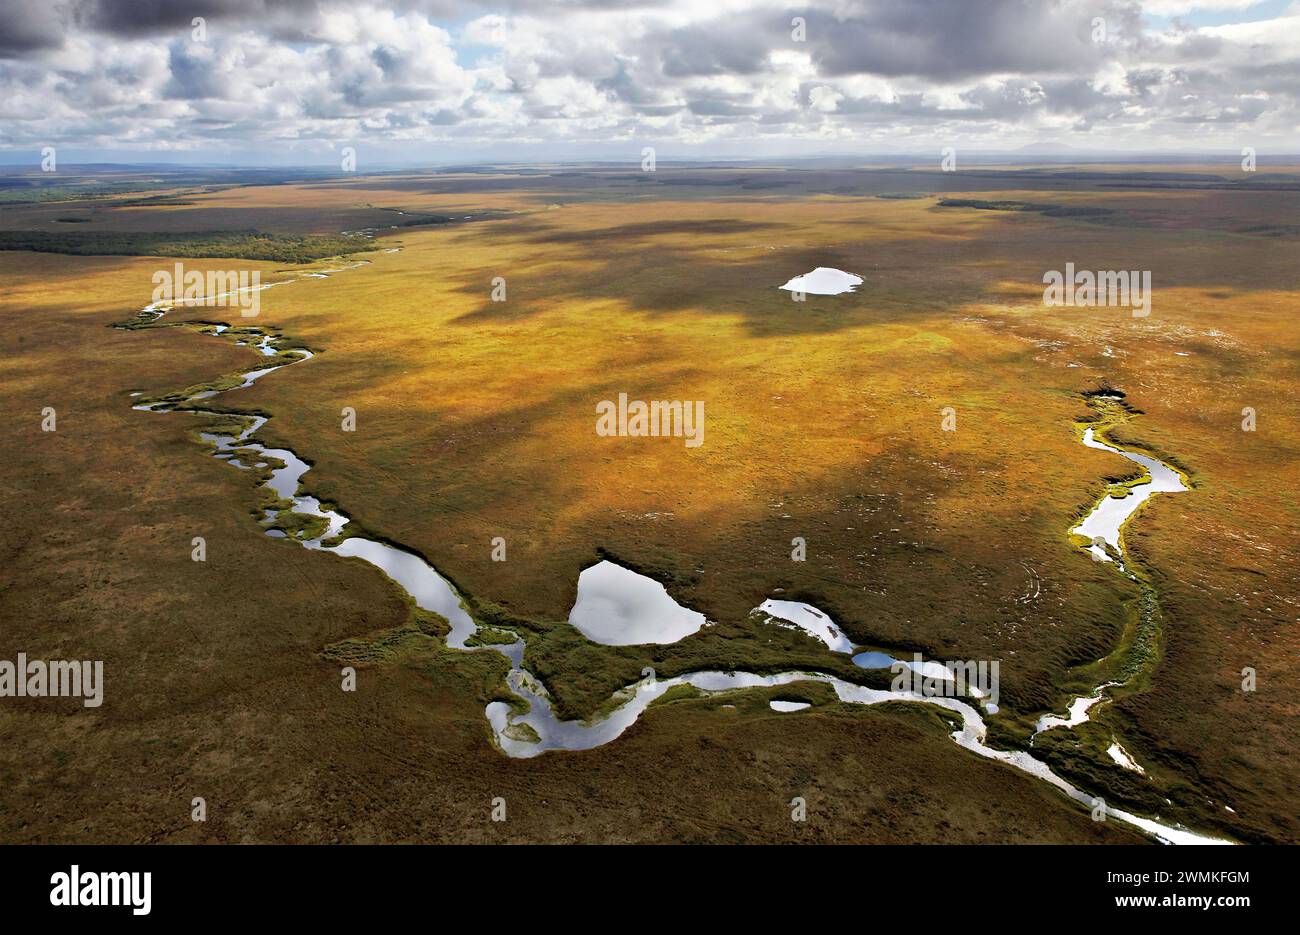 Geflochtenes Flussökosystem schlängelt sich durch die Tundra und wird zum Laichen von Lachsen verwendet. Lachse bringen Meeresnährstoffe aus dem Kamtschatka-Schelf... Stockfoto